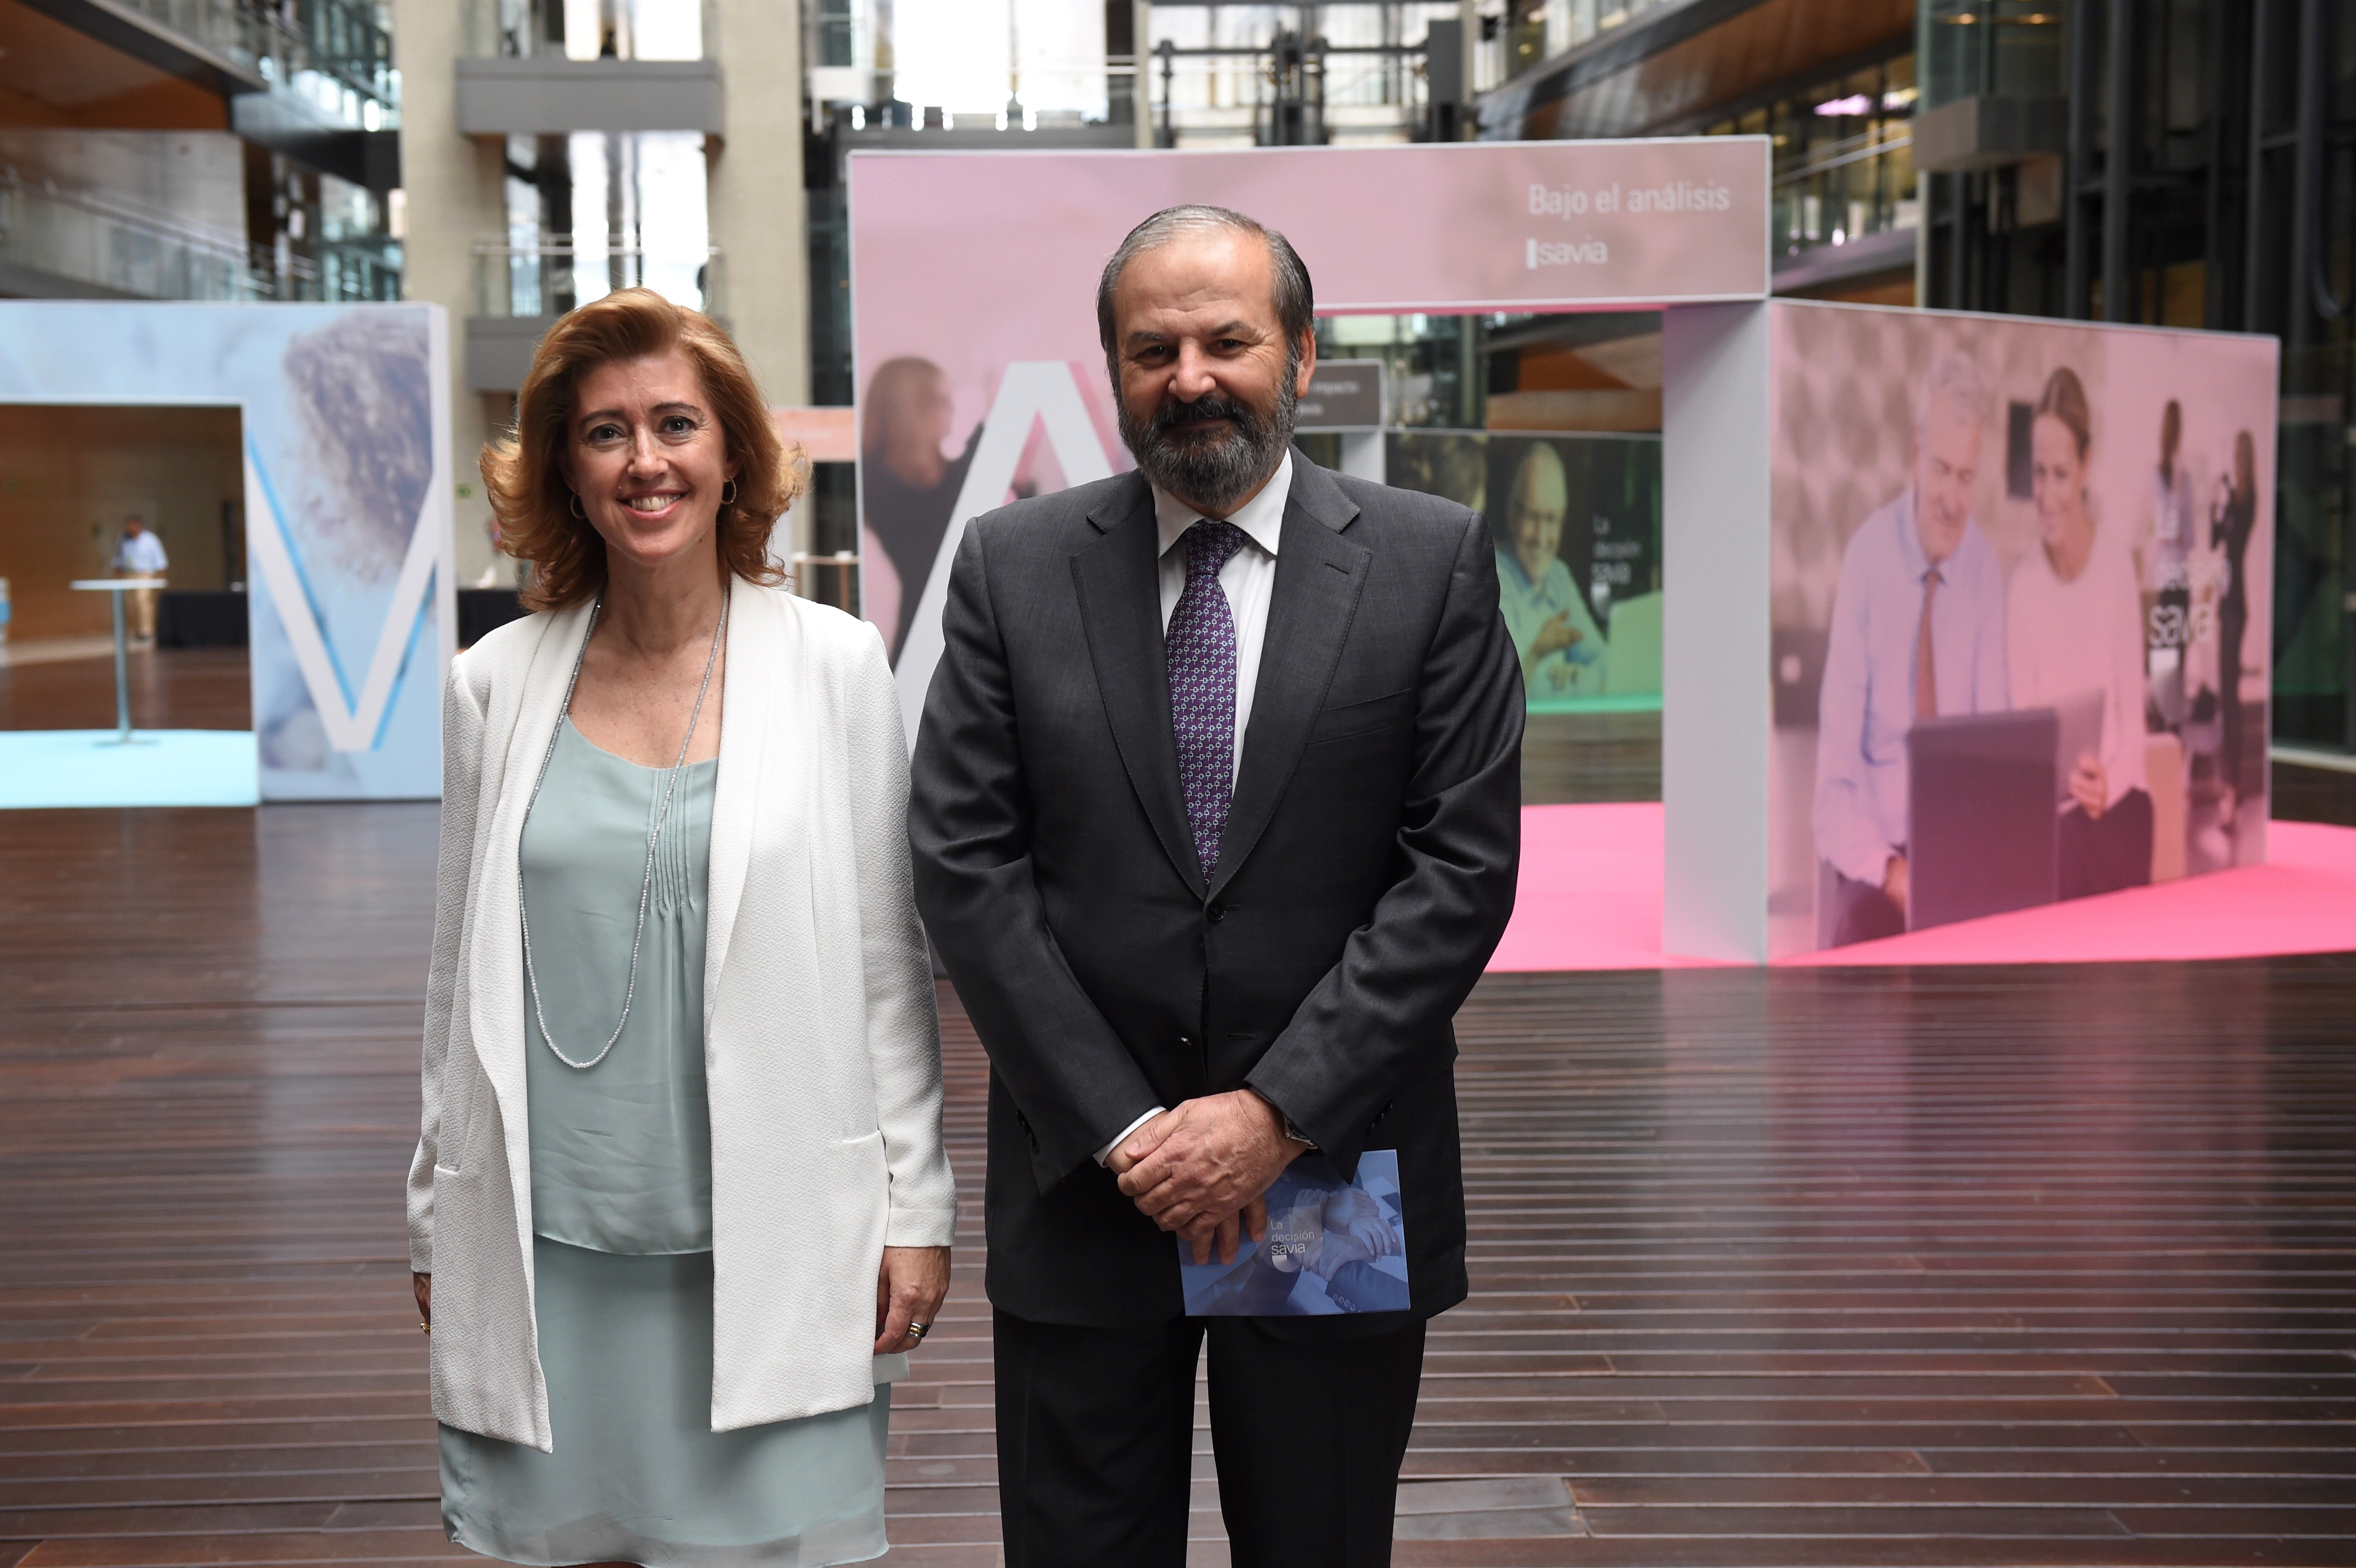 El presidente de la Fundación Endesa, Juan Sánchez-Calero, y la presidenta de la Fundación máshumano, María Sánchez-Arjona.